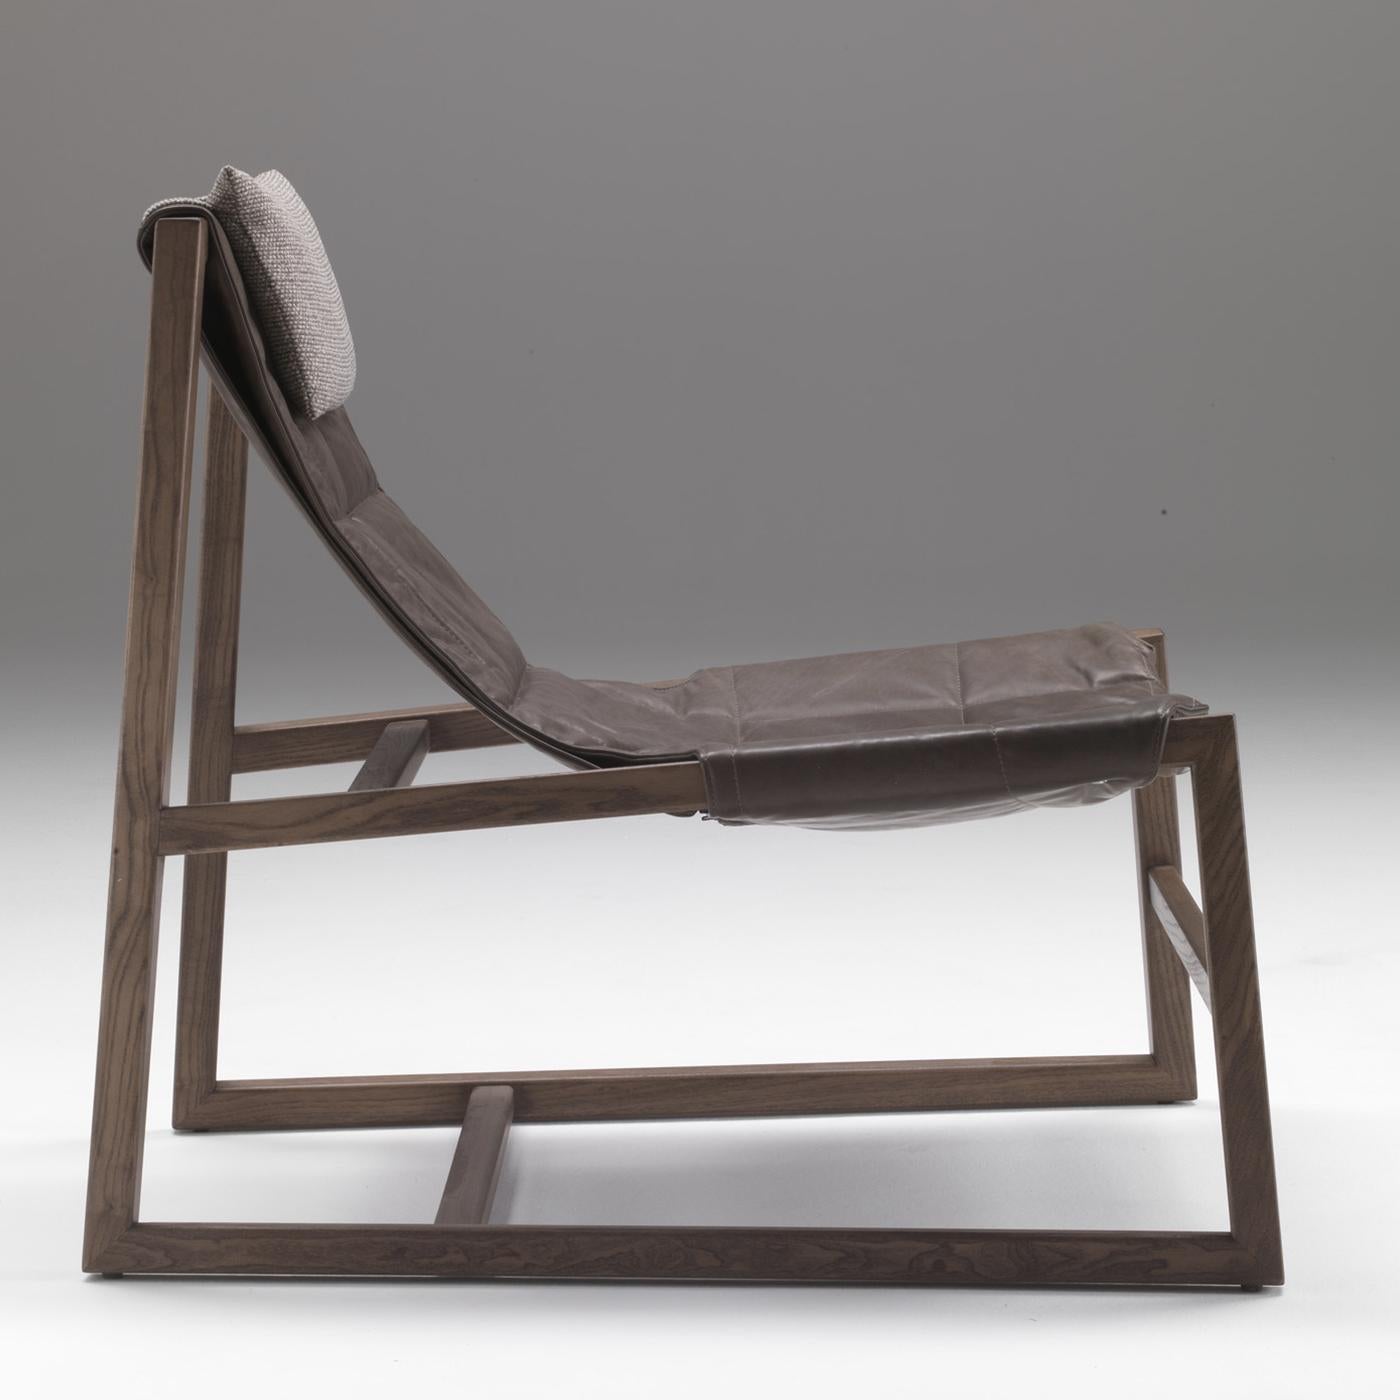 Conçue par Controdesign Studio, cette chaise longue présente un design à la fois audacieux et élégant qui la distinguera dans n'importe quel cadre contemporain ou industriel. Sa structure en frêne massif combine des éléments horizontales et